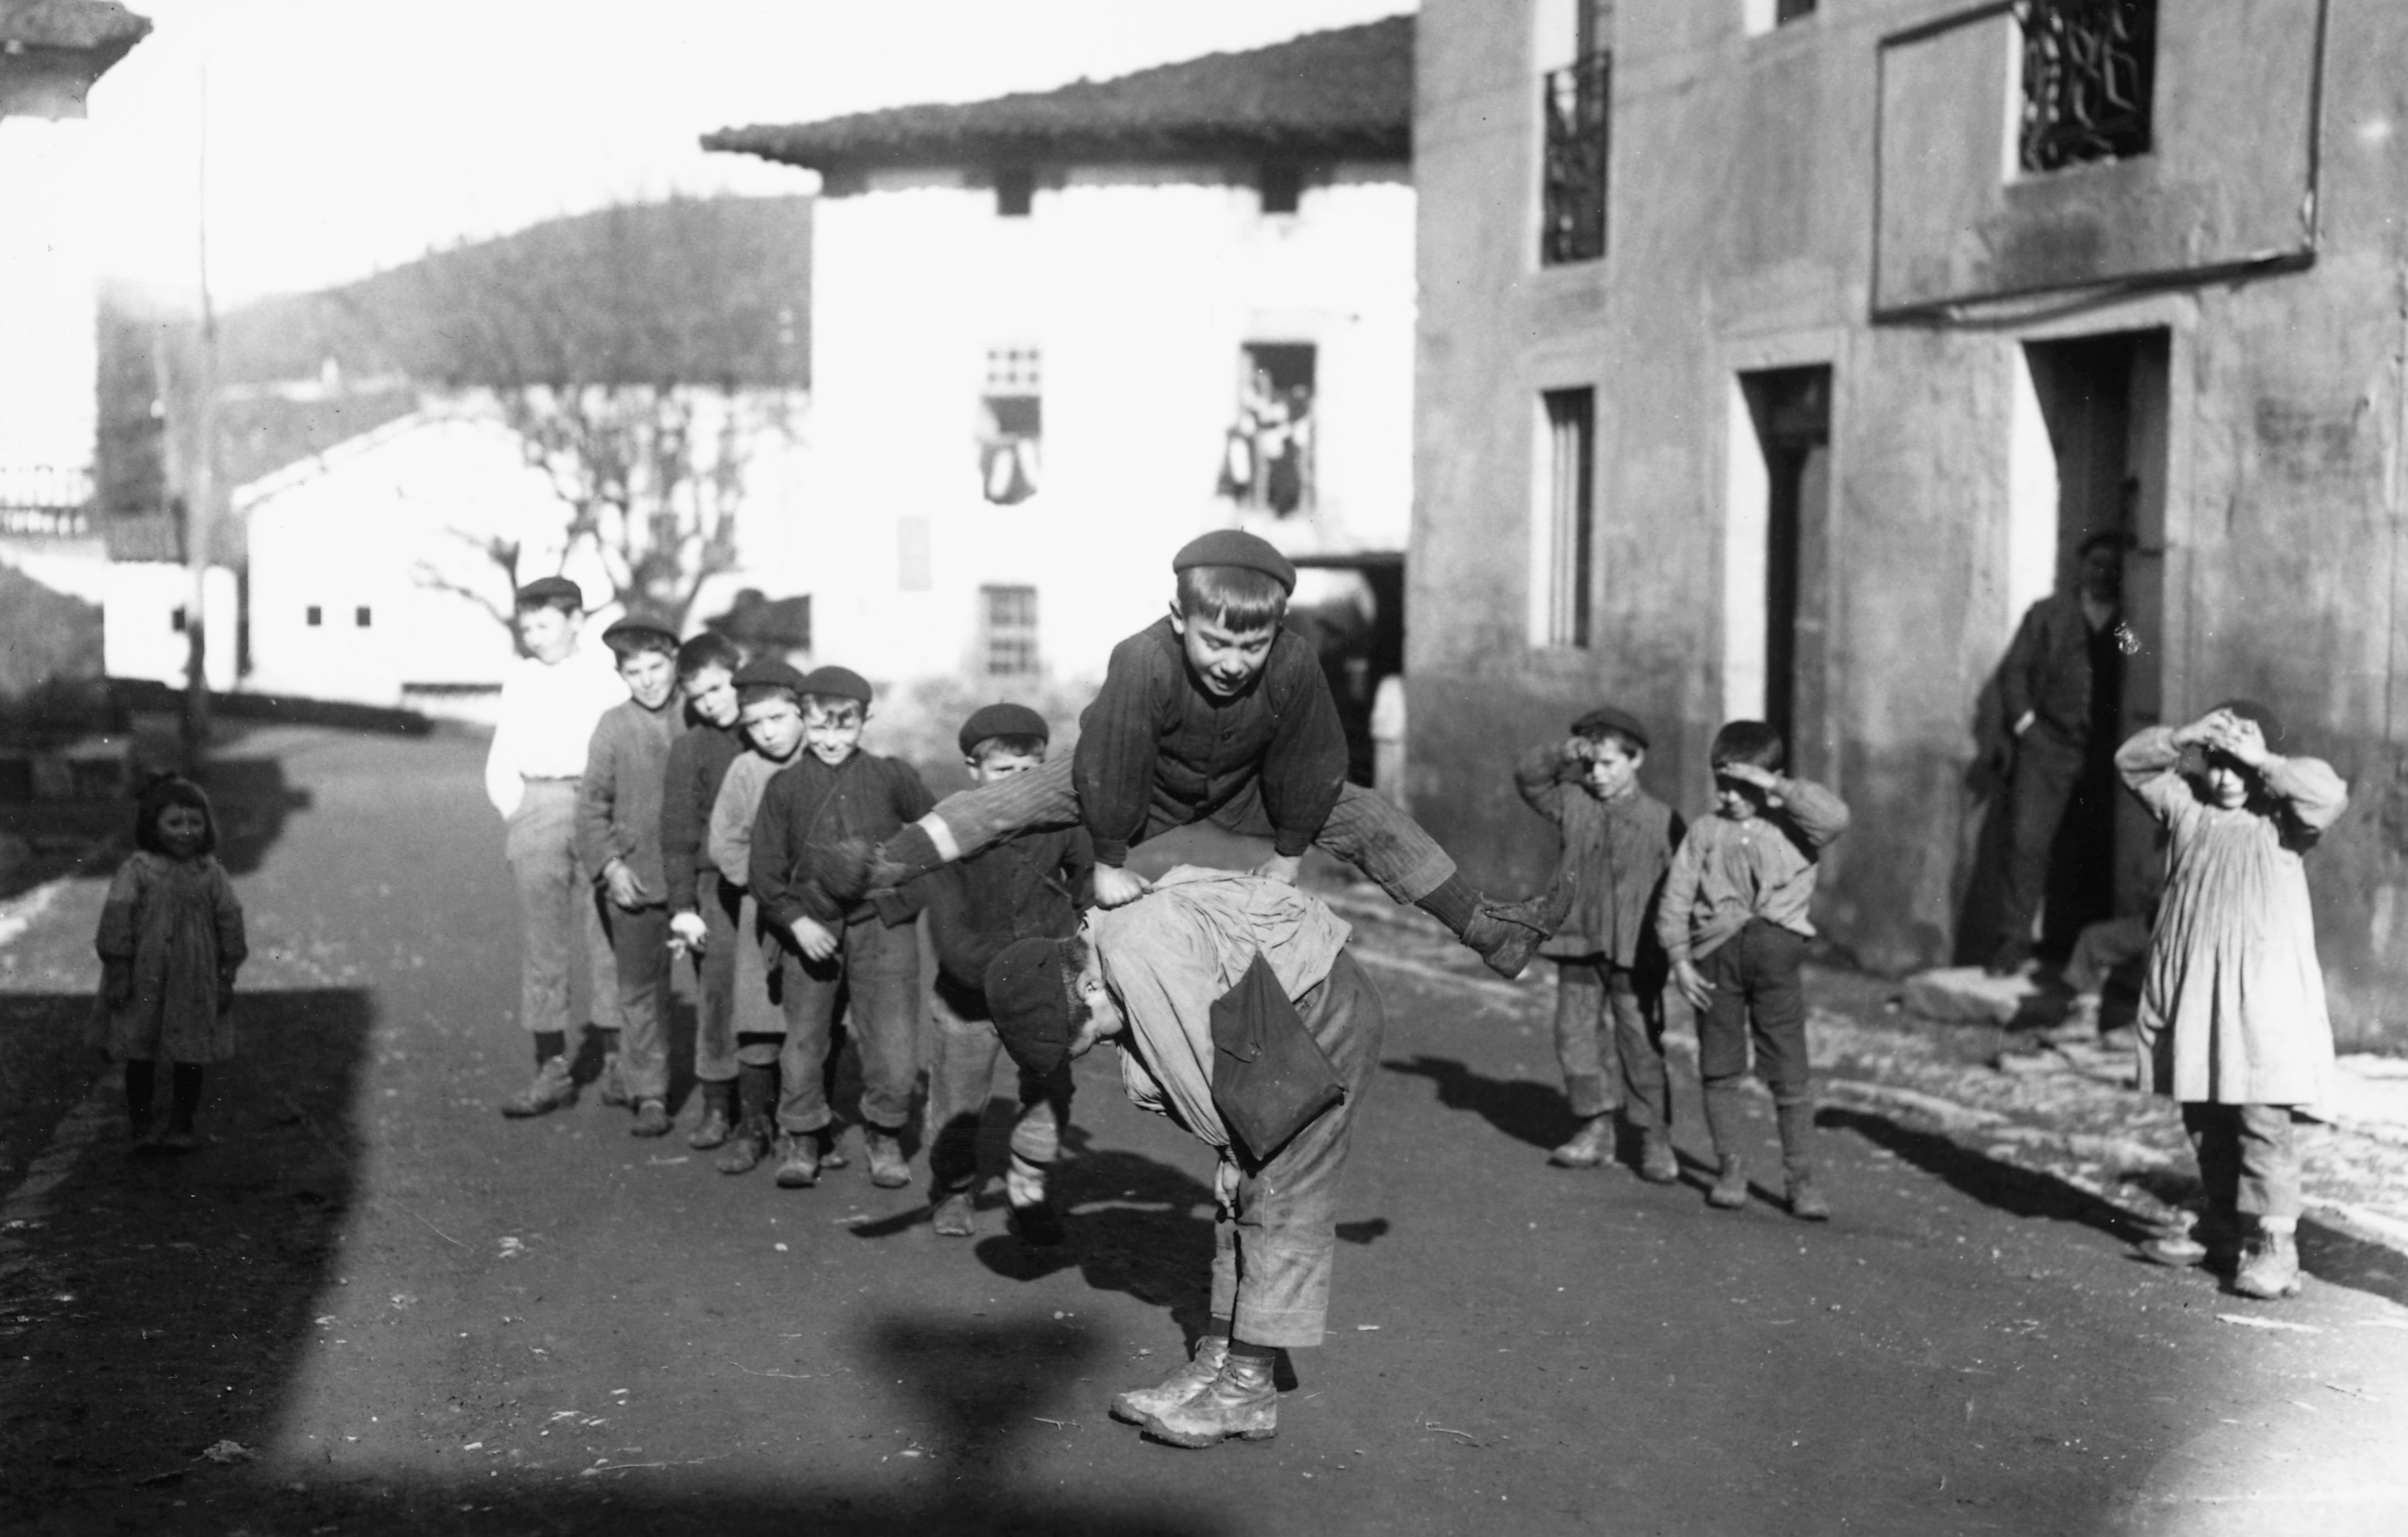 Asto-astoka ‘Al burro seguido’. Zeanuri (Bizkaia), 1920. Felipe Manterola